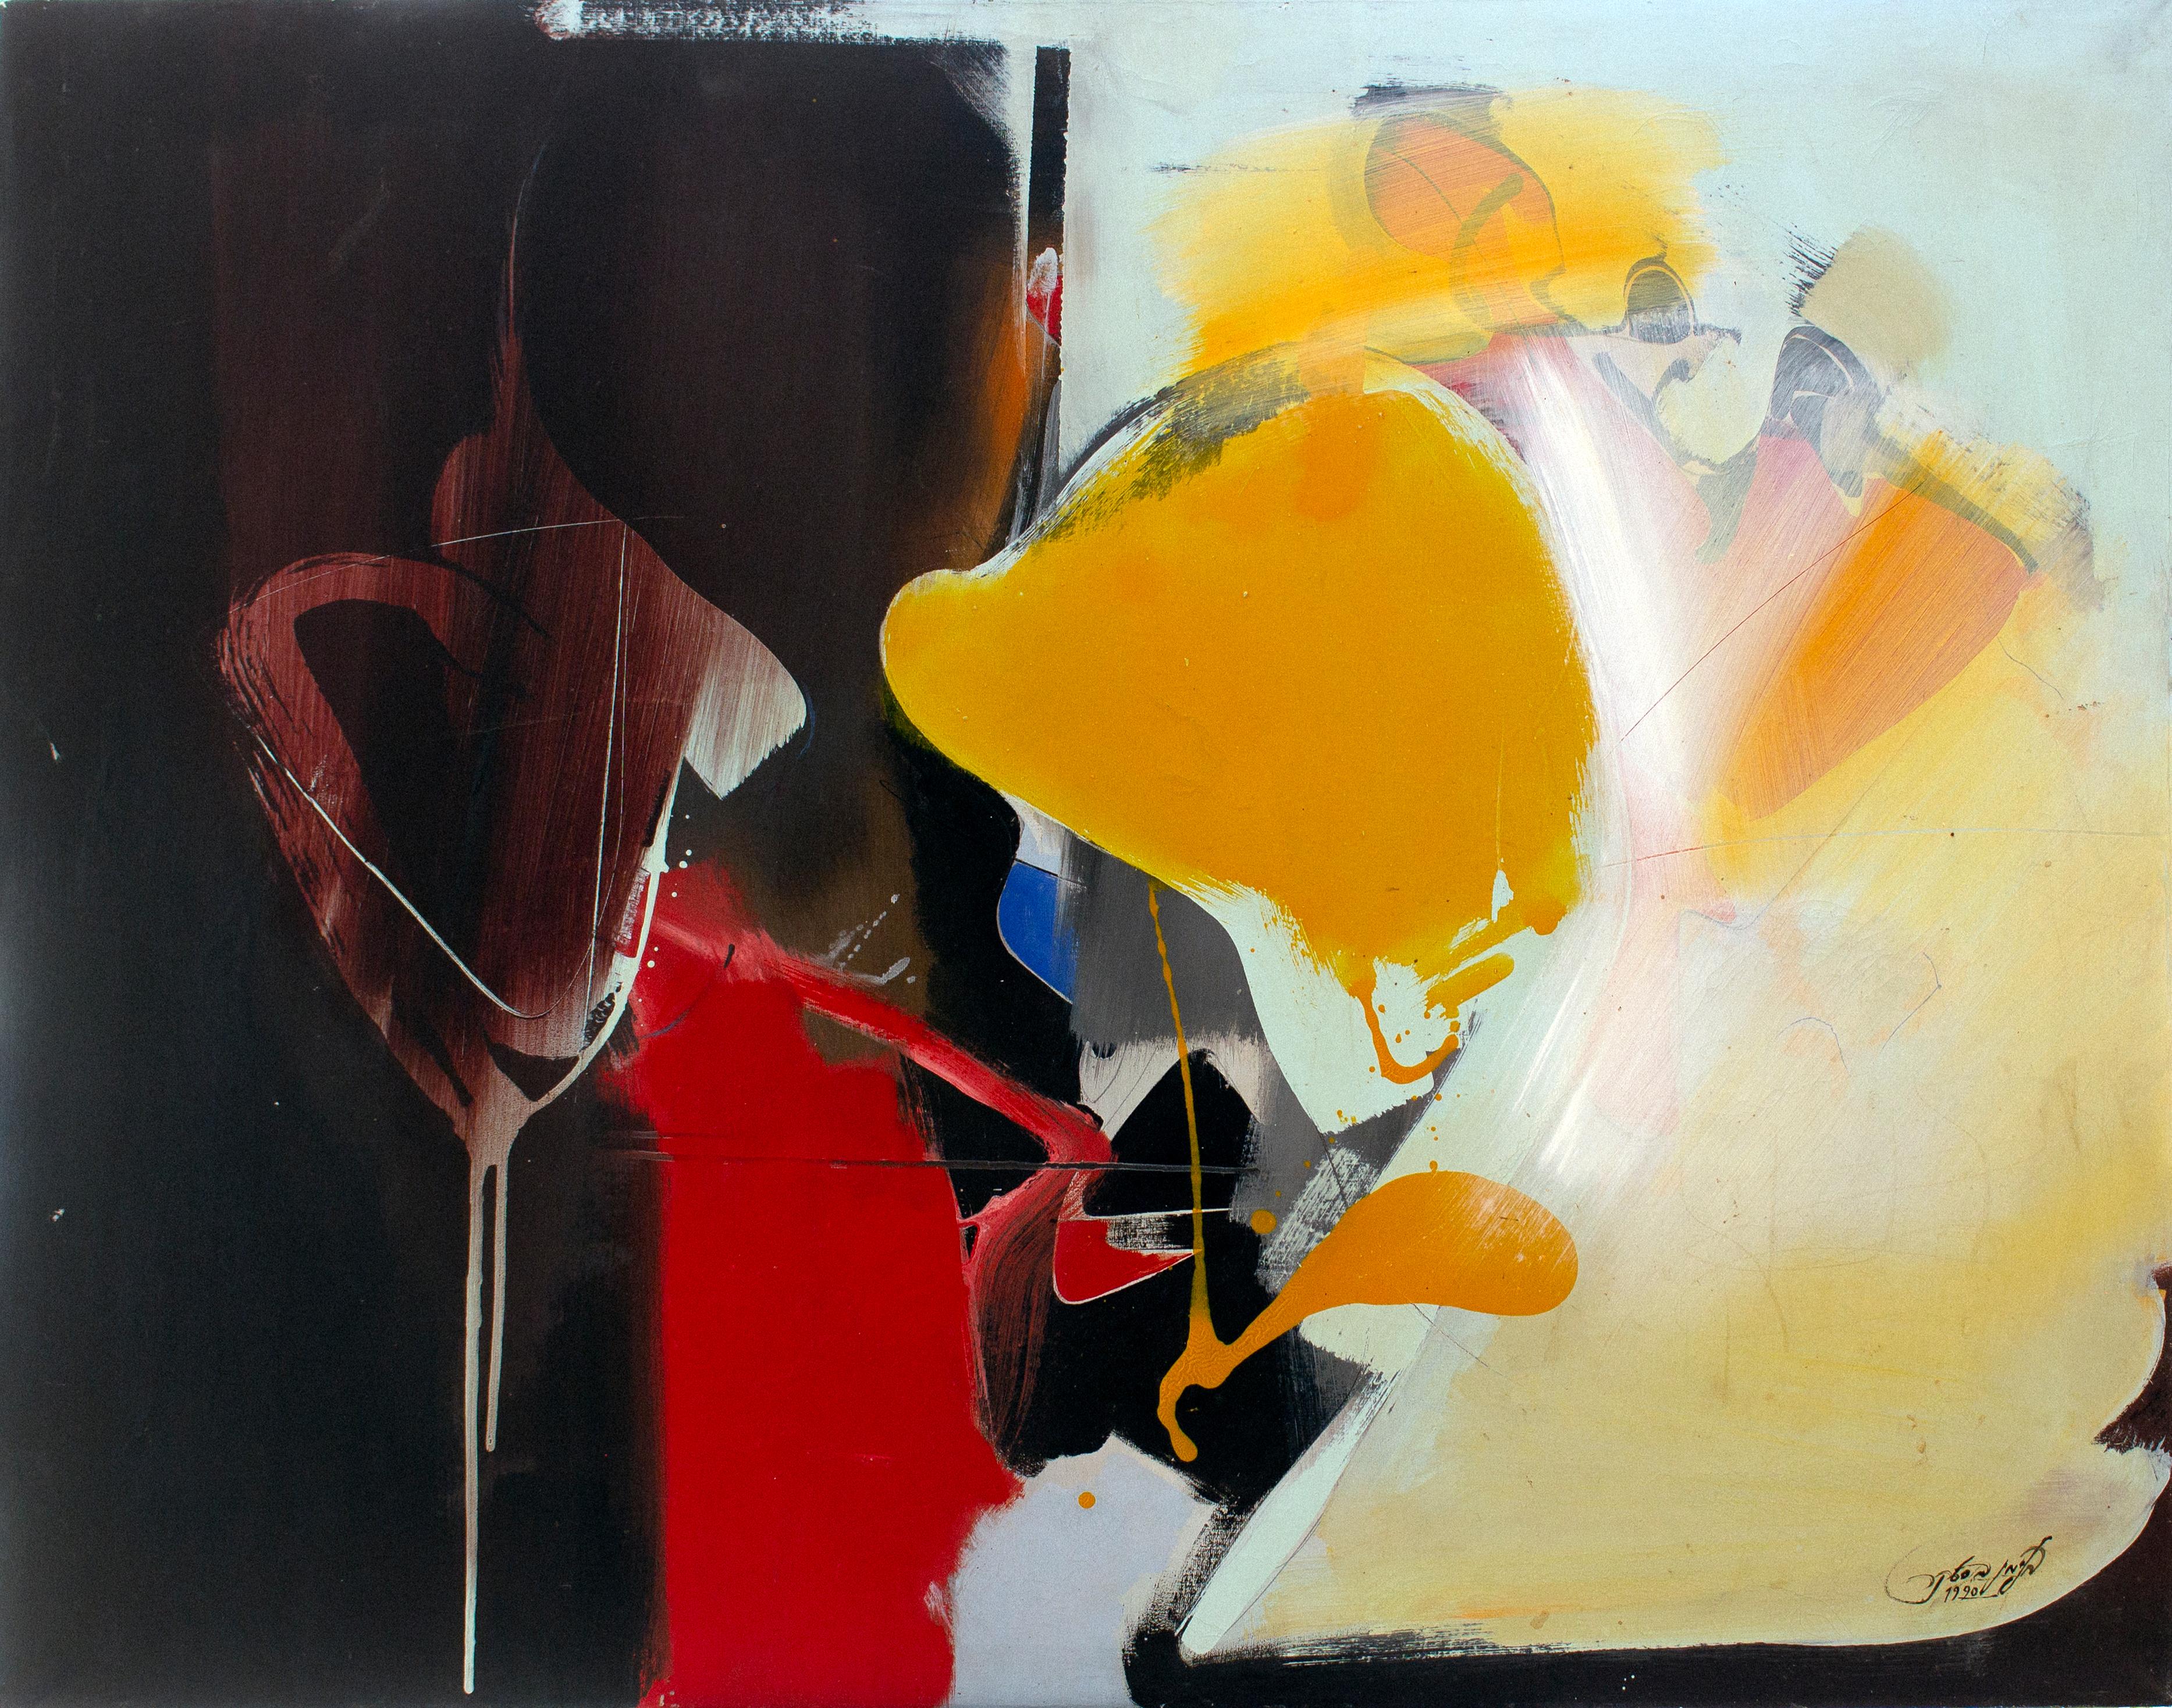 
Binyamin Basteker
Abstrakte Komposition, 1990
Öl auf Leinwand  
87 x 115 cm
34 x 45 in

Binyamin Basteker wurde 1953 in Mumbai geboren. Da er in einer Künstlerfamilie aufwuchs, wurde sein einzigartiges Talent schon sehr früh entdeckt. Noch während